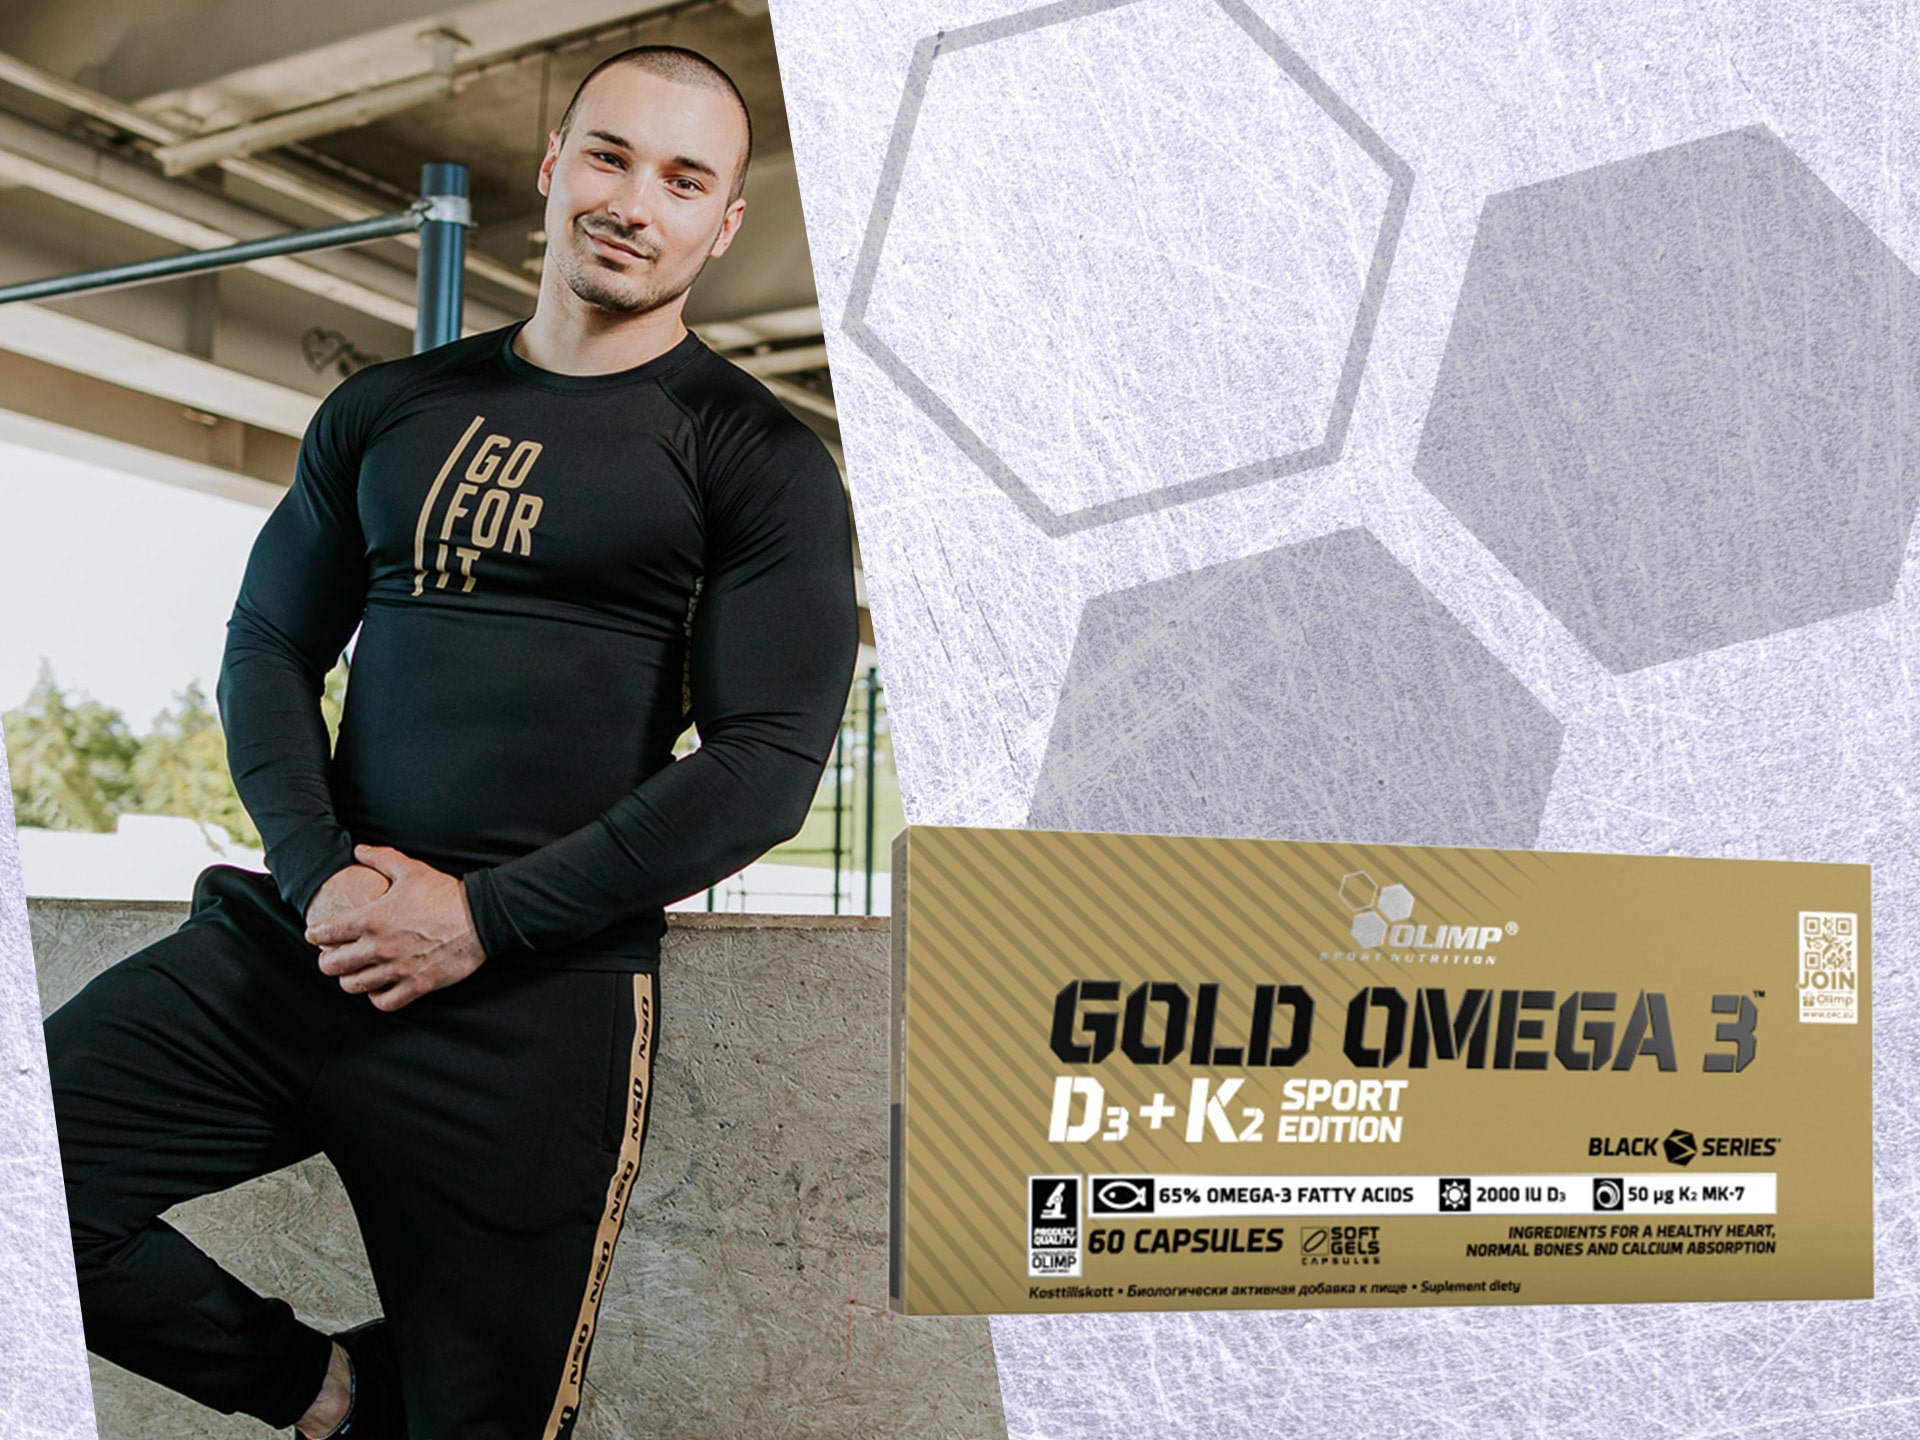 Olimp - Gold Omega3 D3+K2 Sport Edition